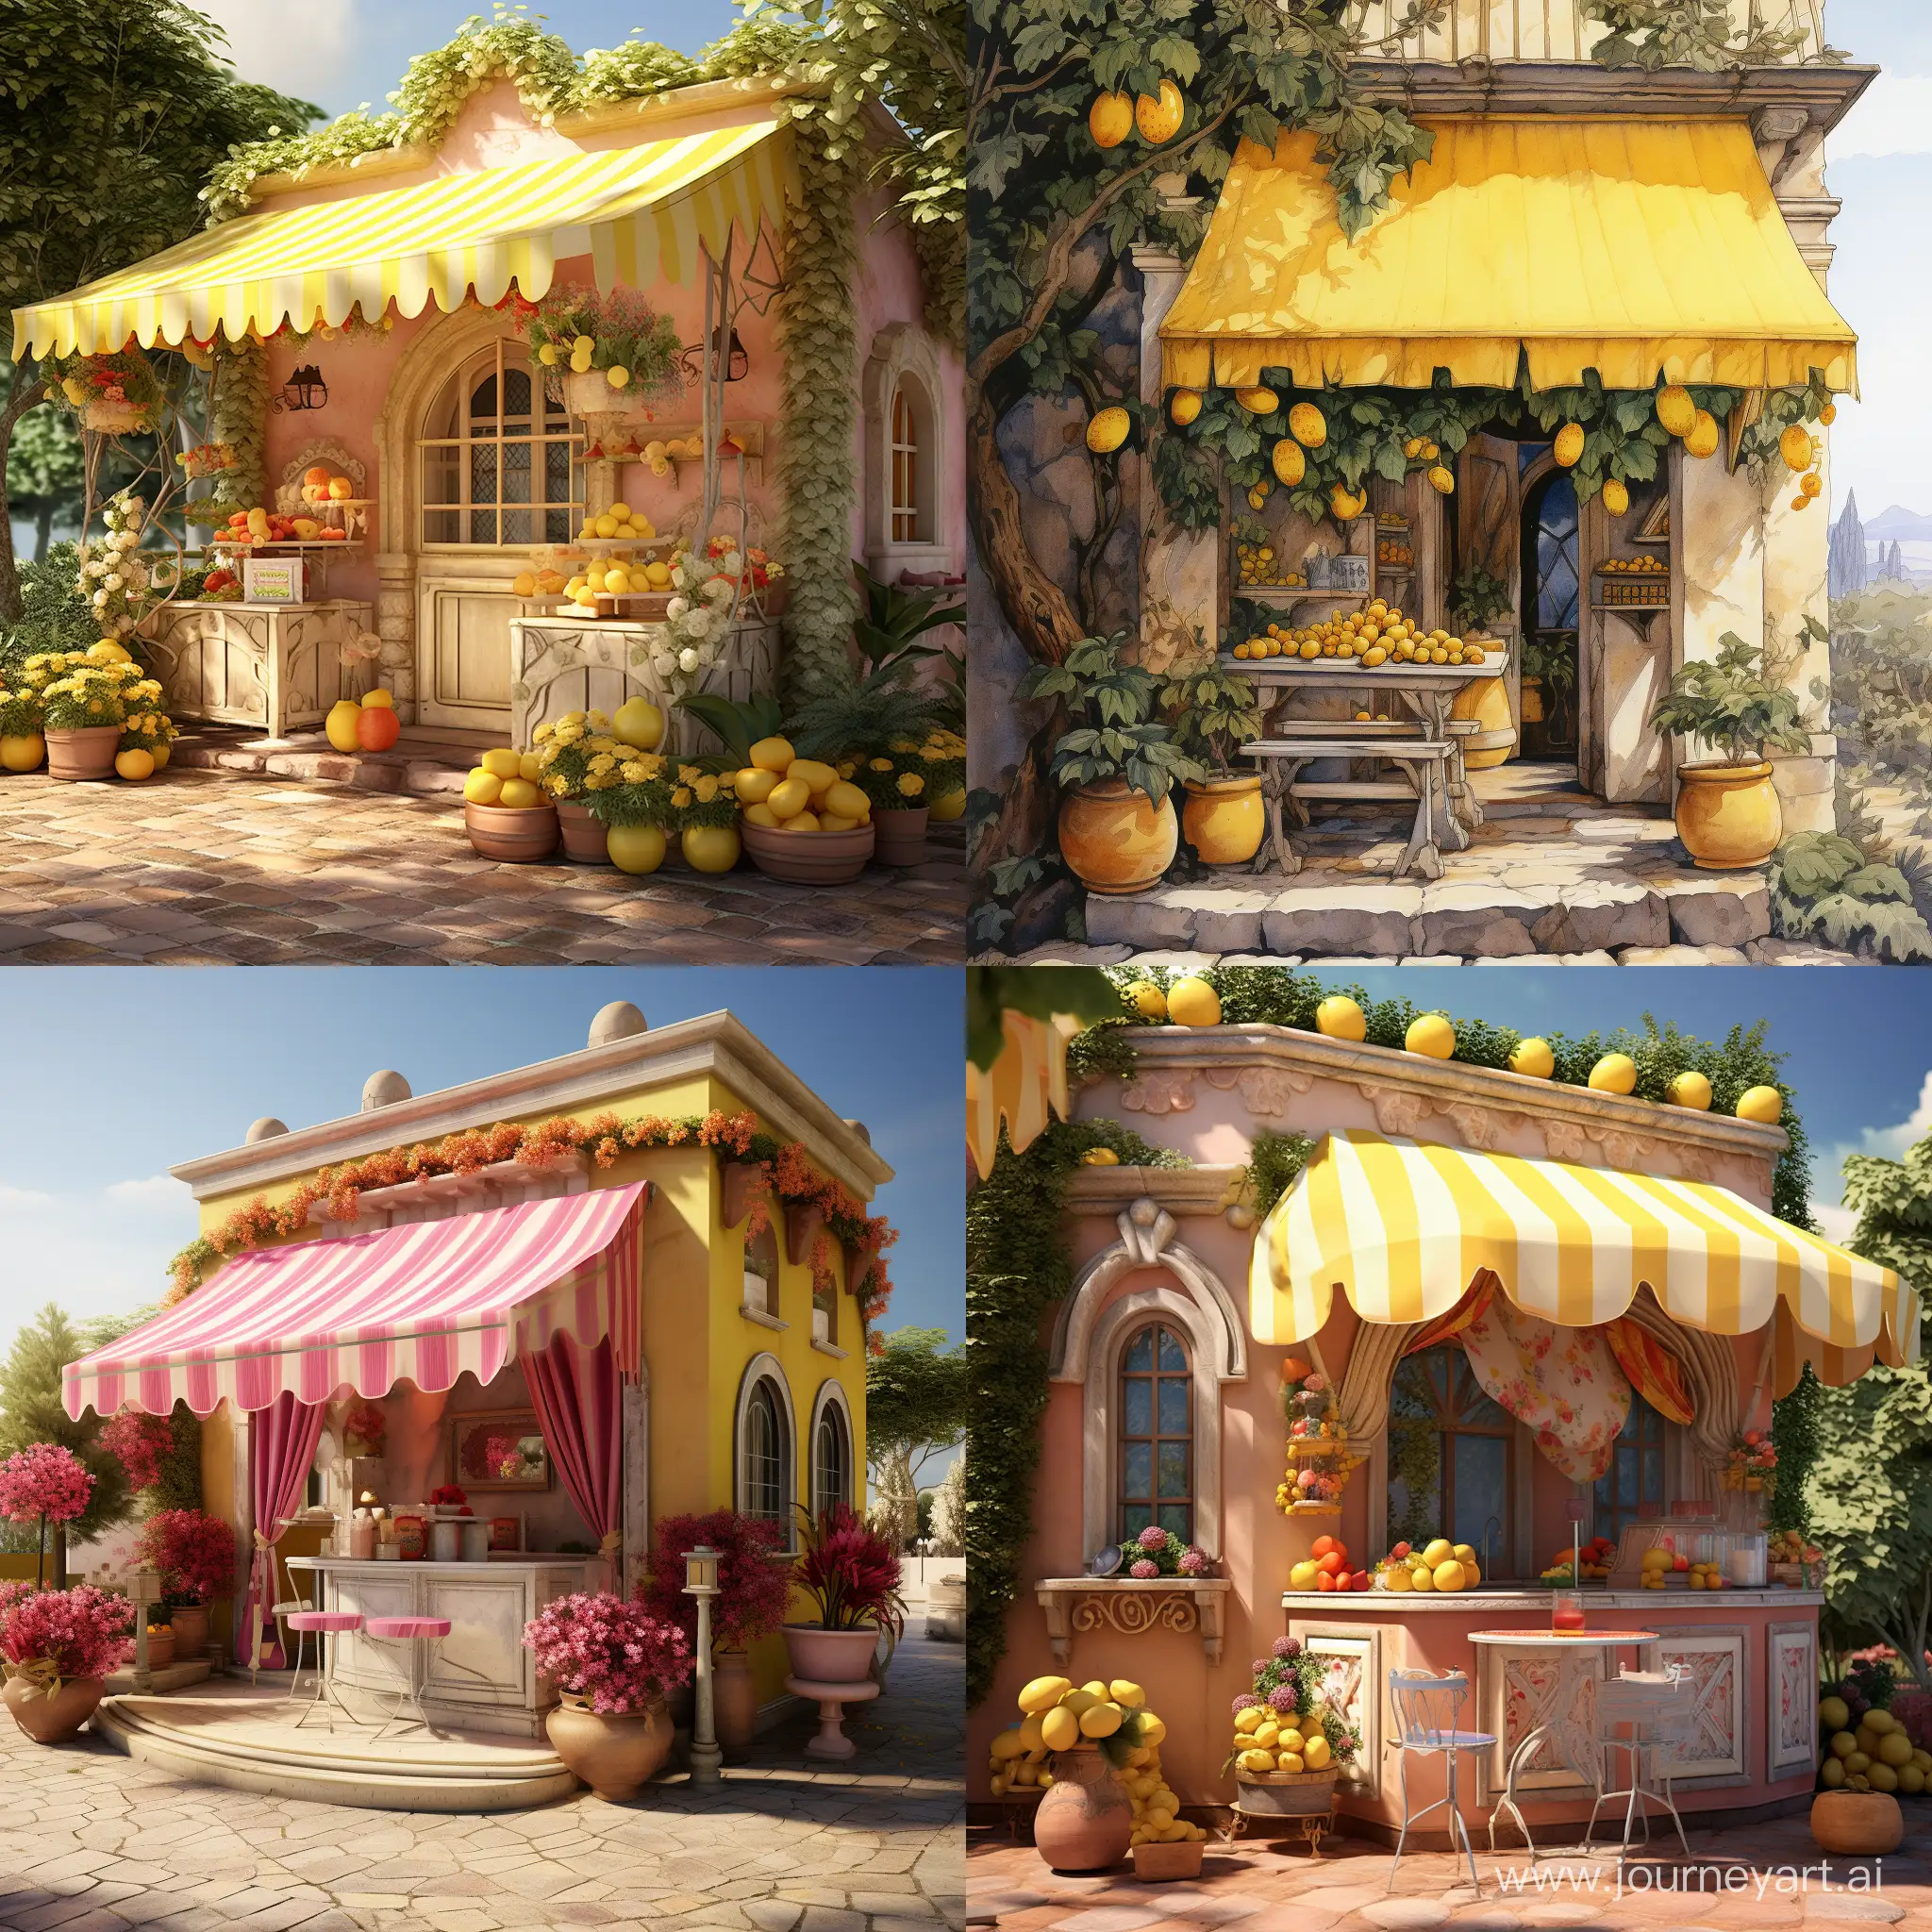 Charming-Lemonade-Stand-at-Villa-Entrance